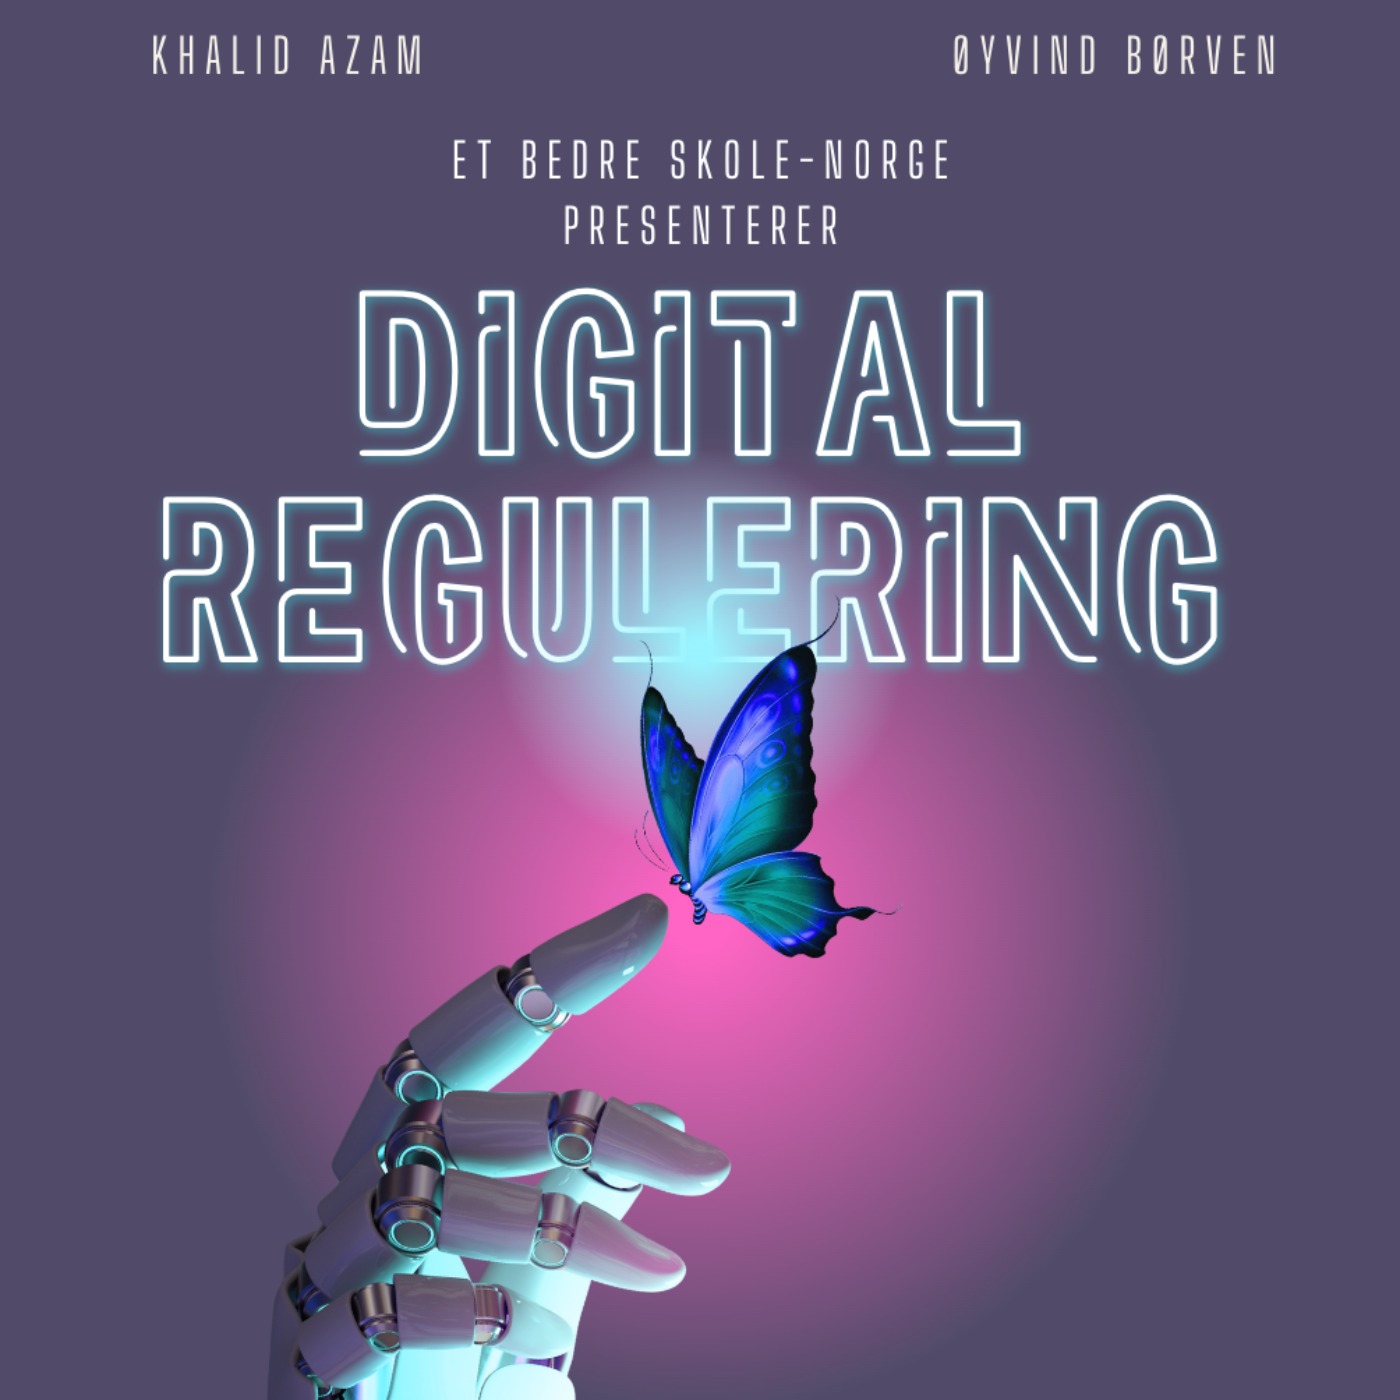 Digital Regulering med Khalid Azam